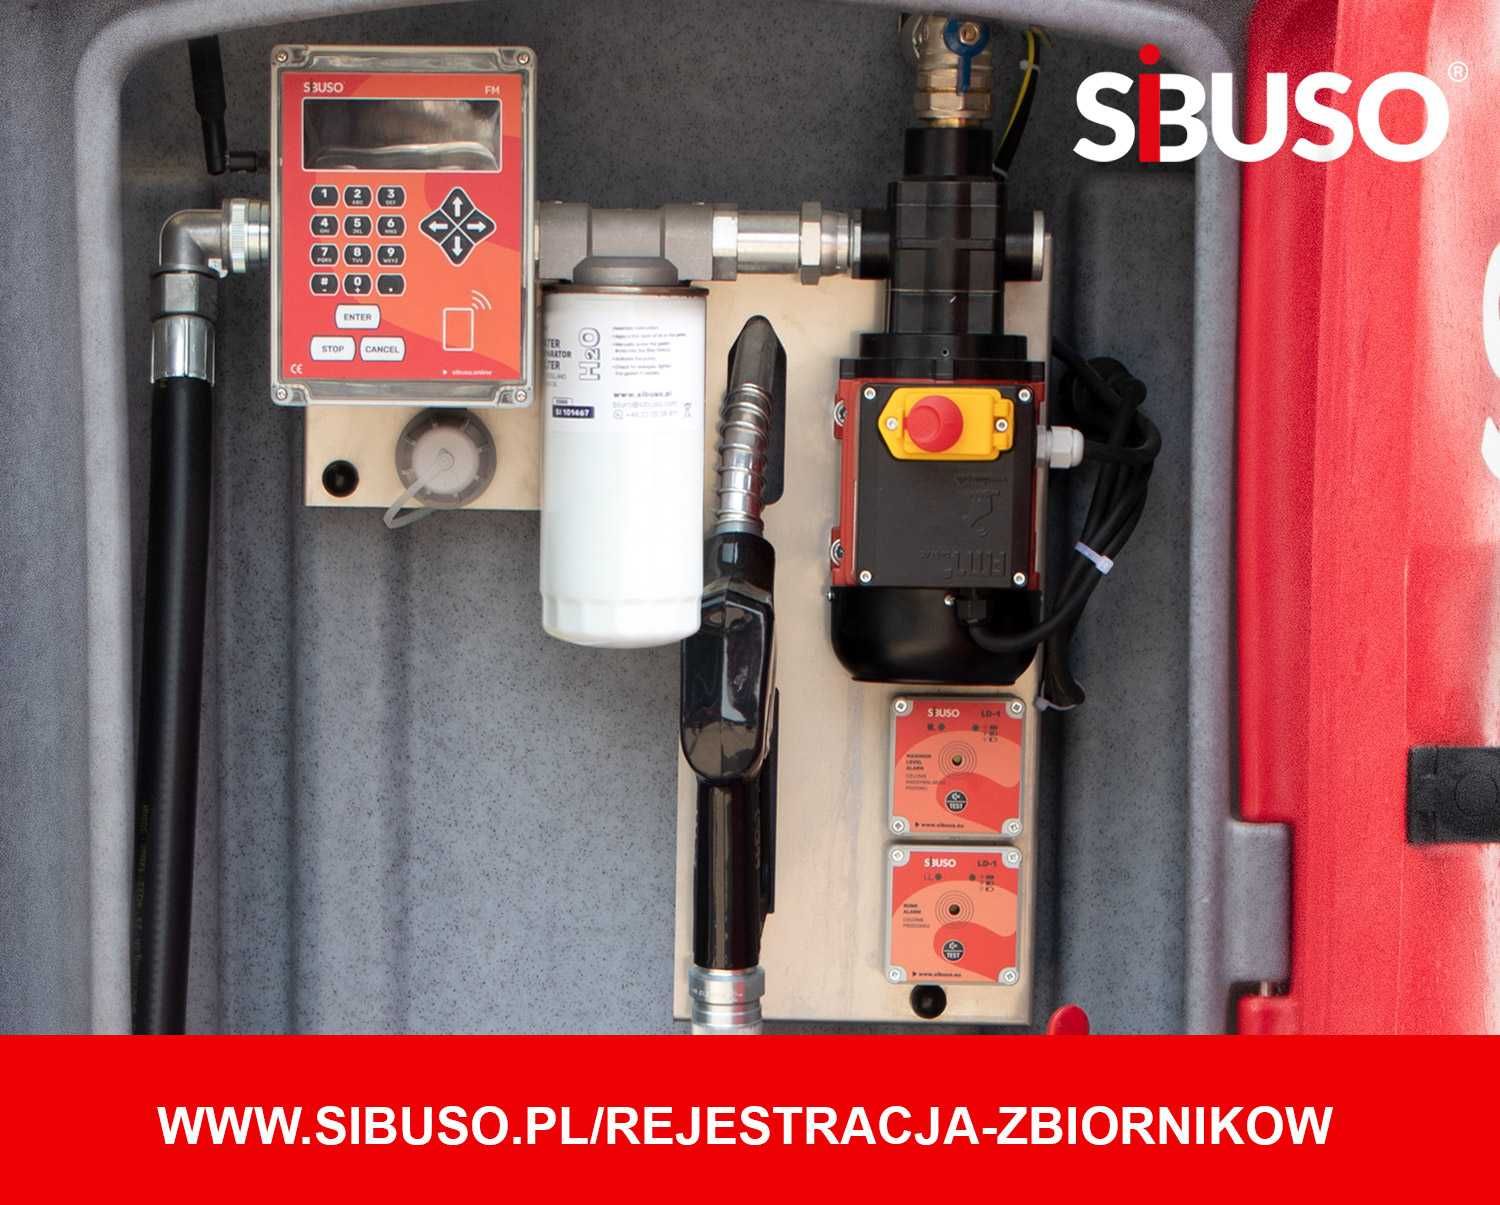 Zbiornik paliwo olej napędowy SIBUSO NVCL 5000 5lat gwarancji na pompę